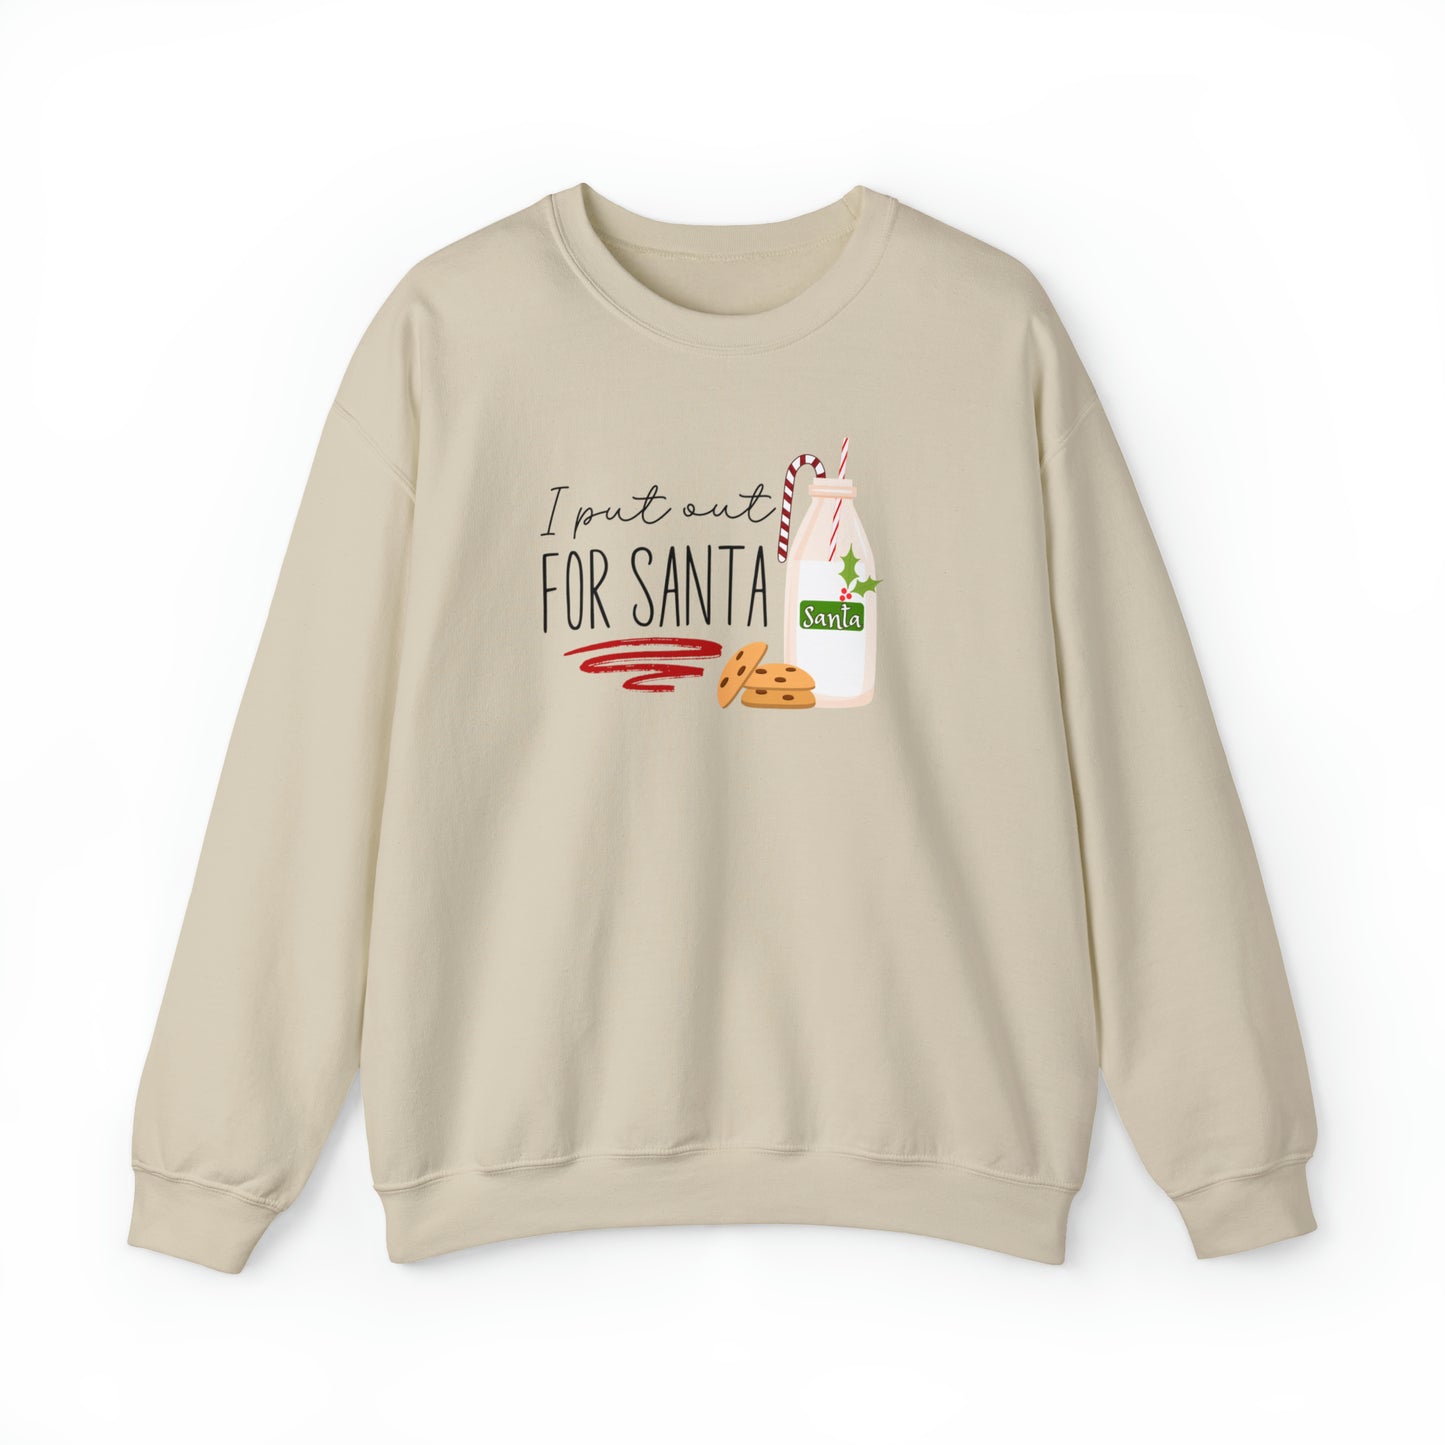 "I Put Out for Santa" Christmas Crewneck Sweatshirt